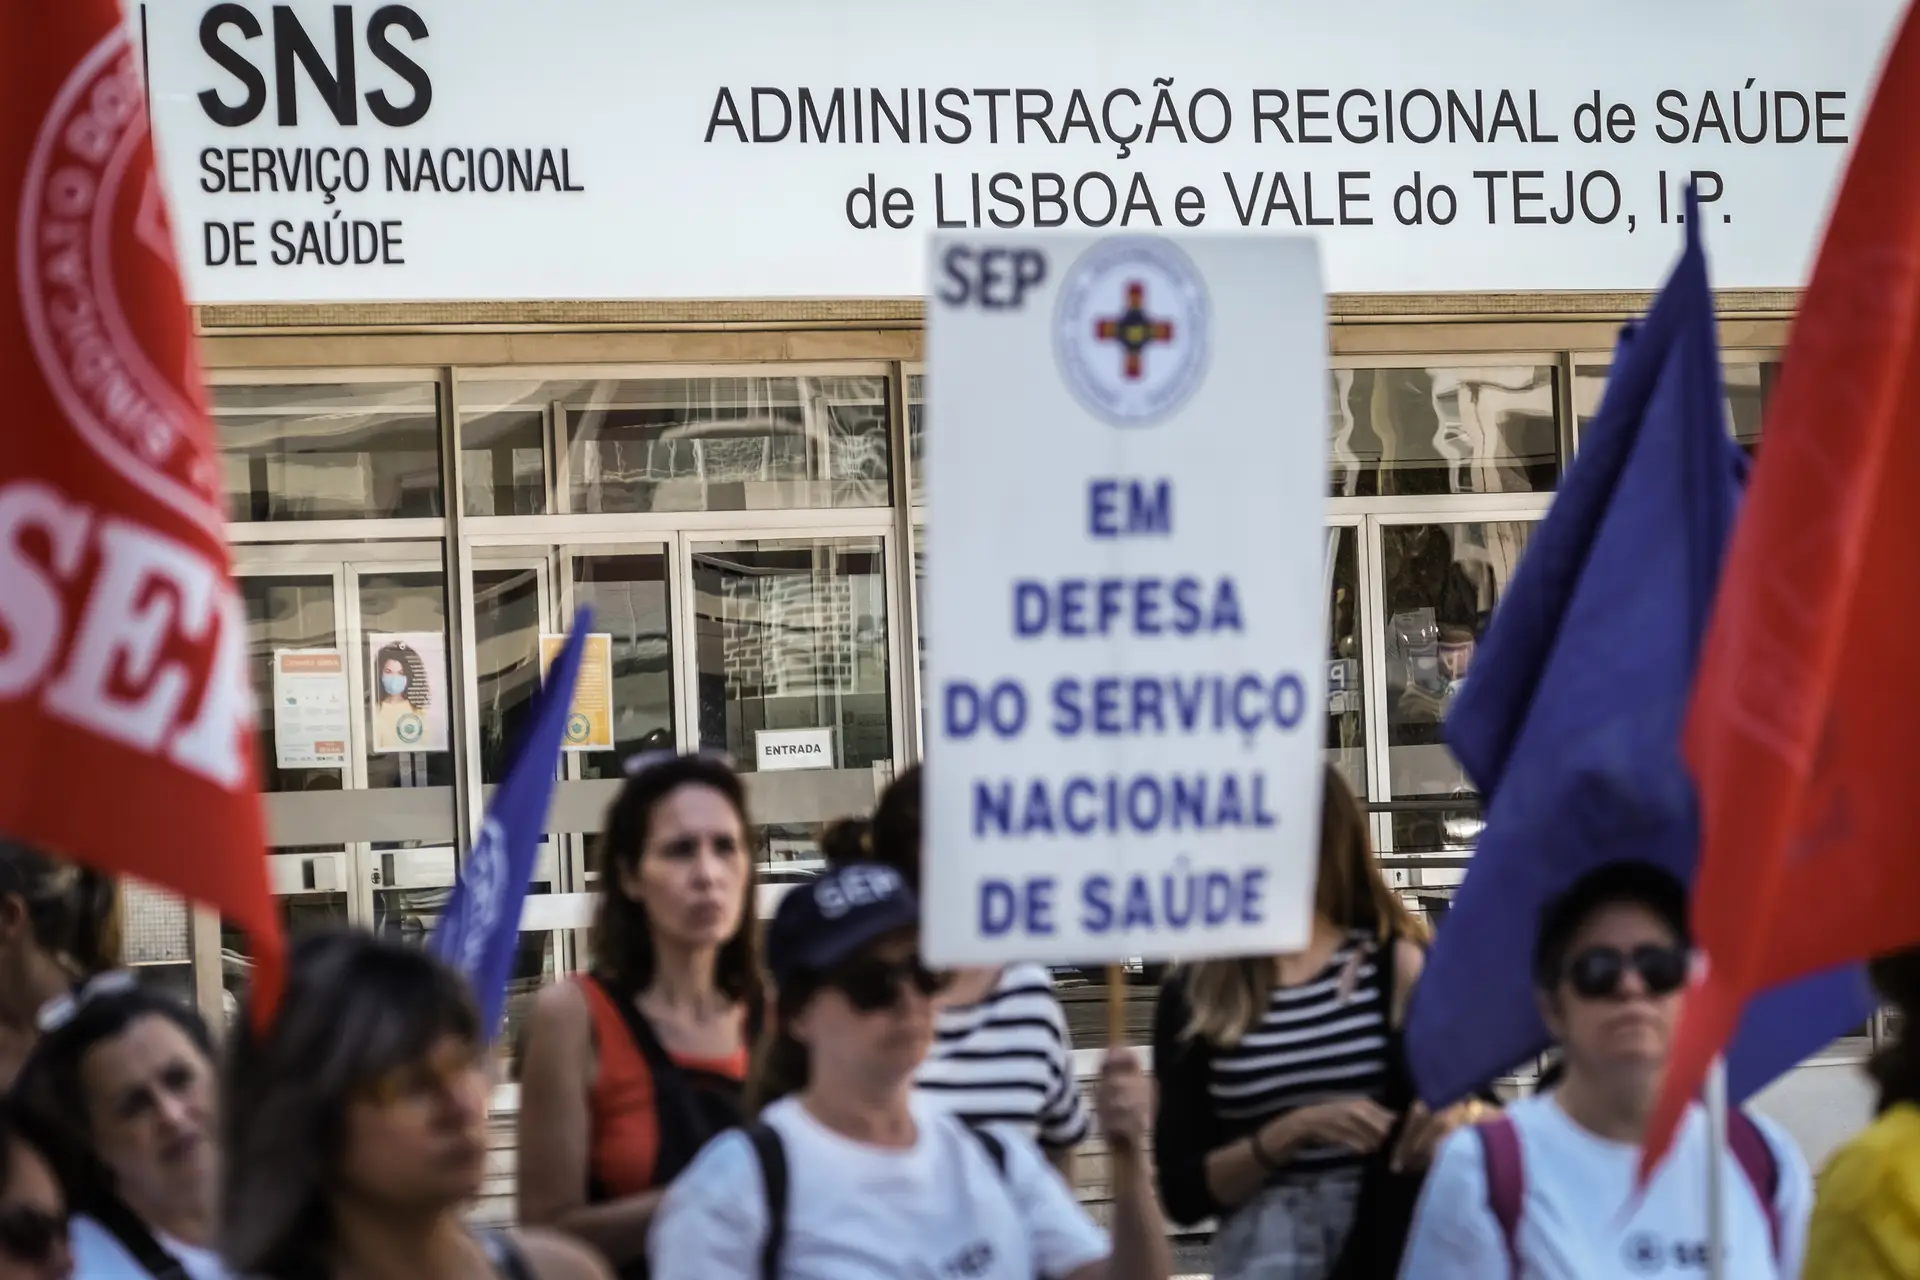 Enfermeiros em protesto, em Lisboa